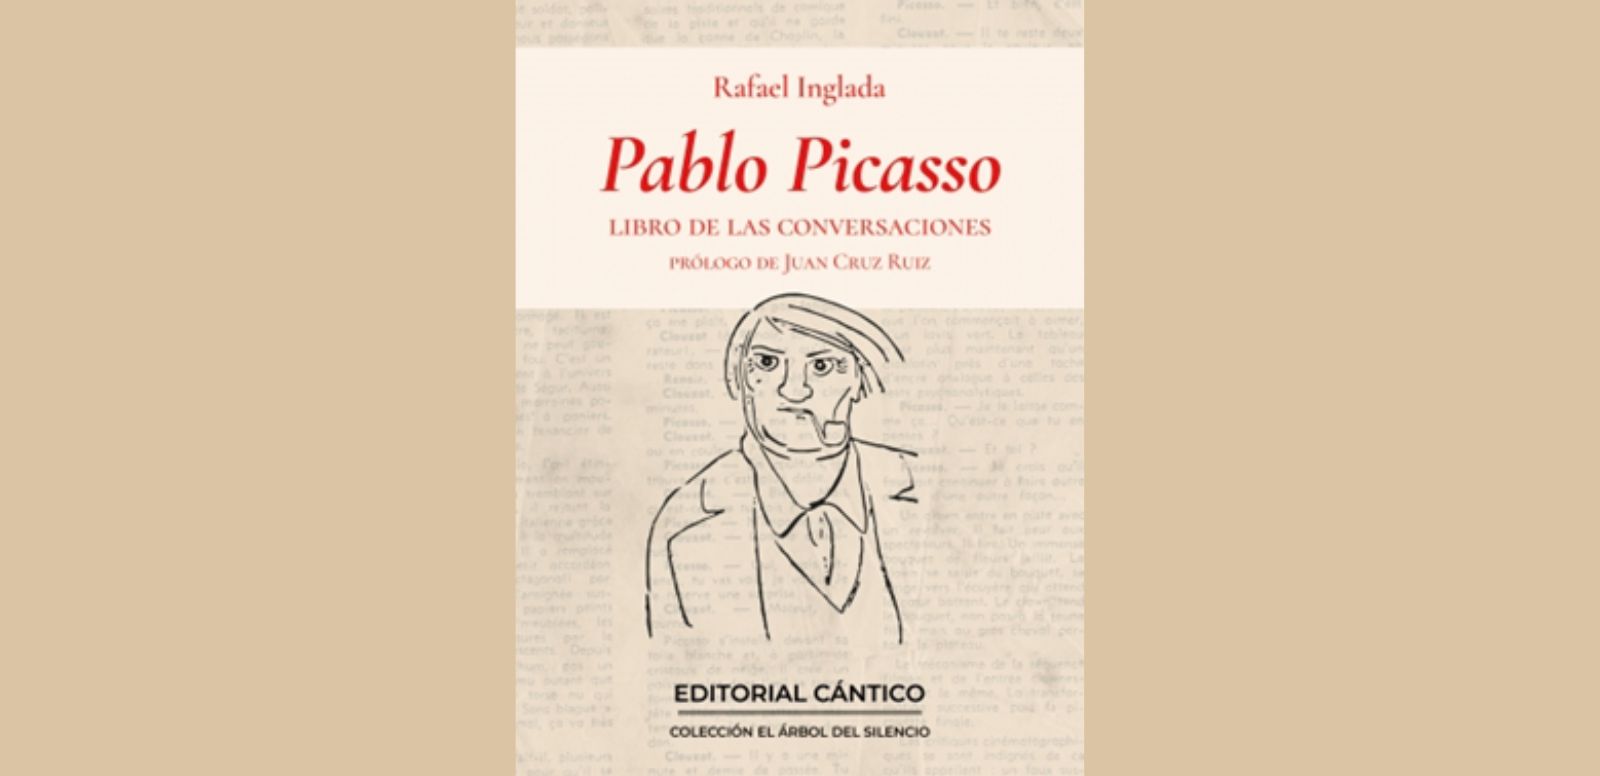 “Pablo Picasso. Un libro de las conversaciones” Rafeal Inglada